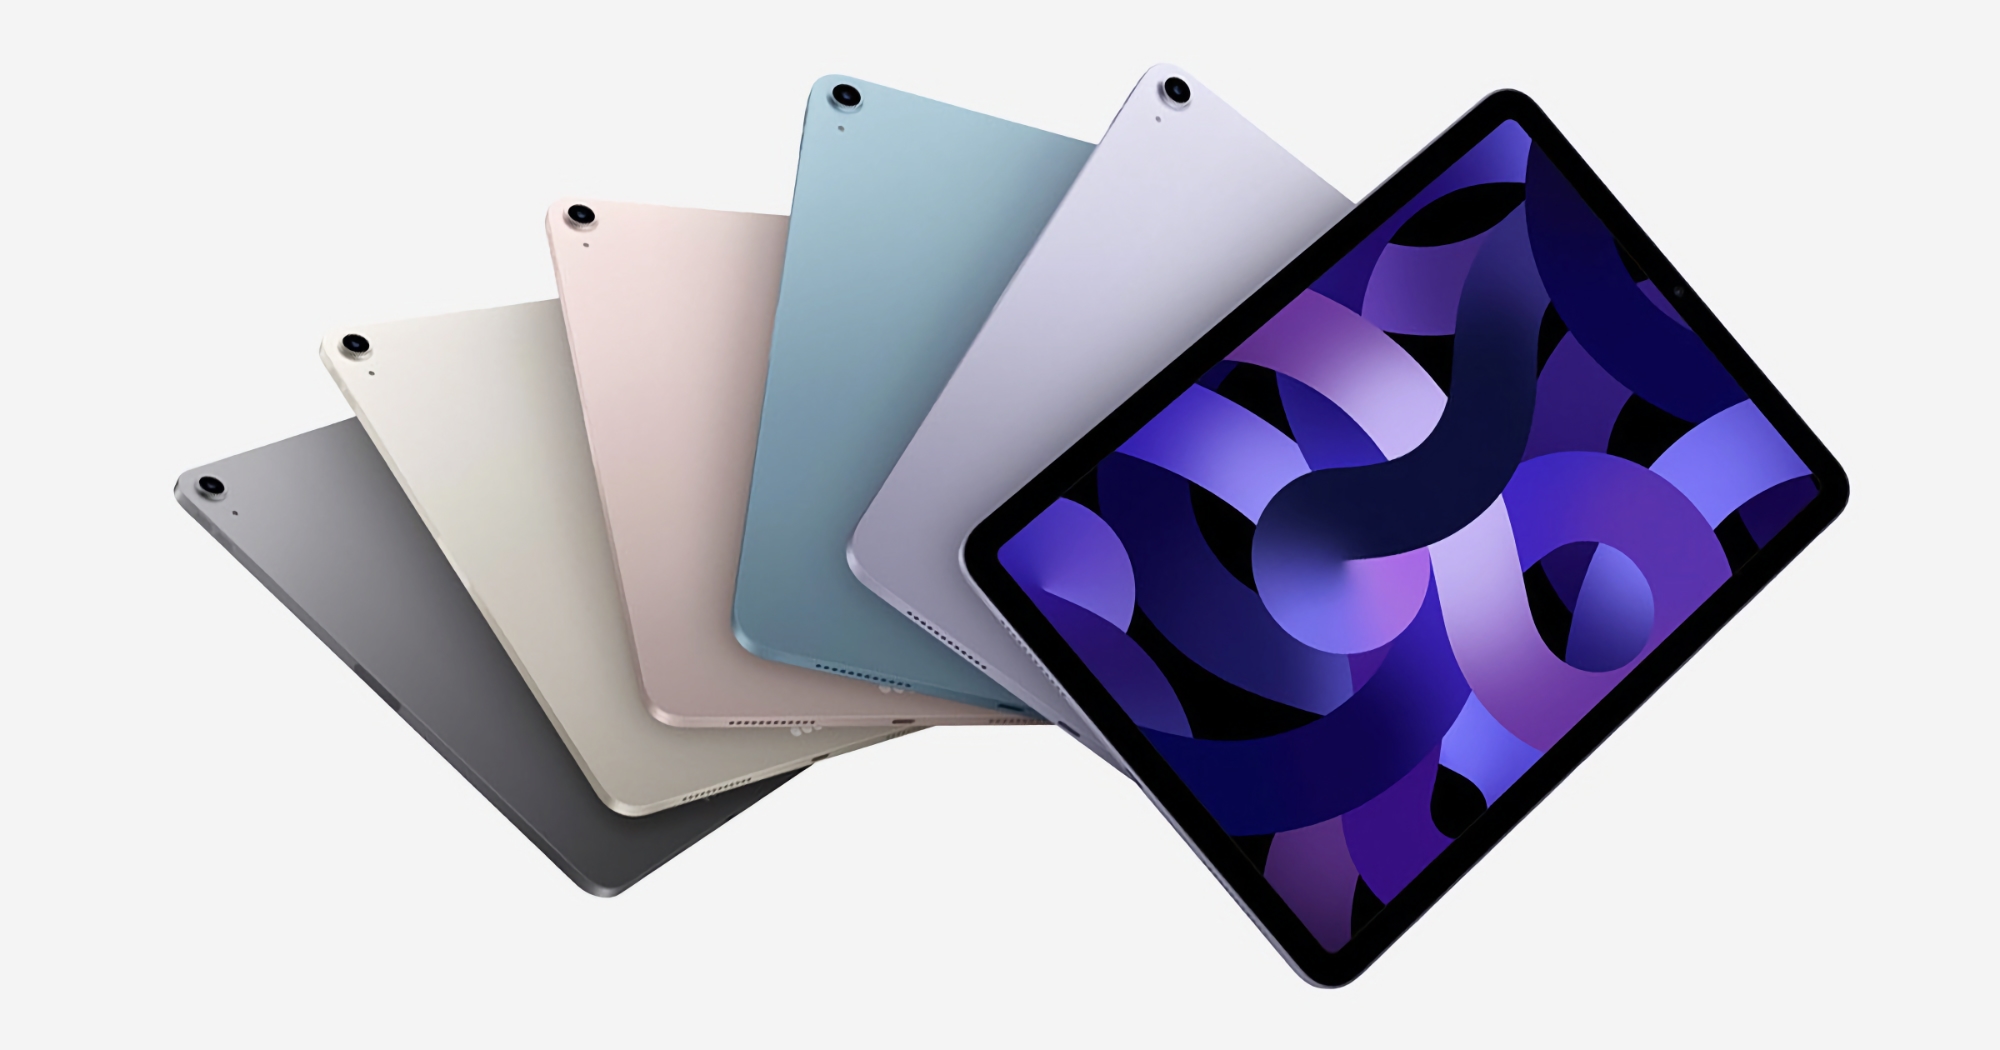 Angebot des Tages: iPad Air mit M1-Chip für $100 Rabatt bei Amazon erhältlich